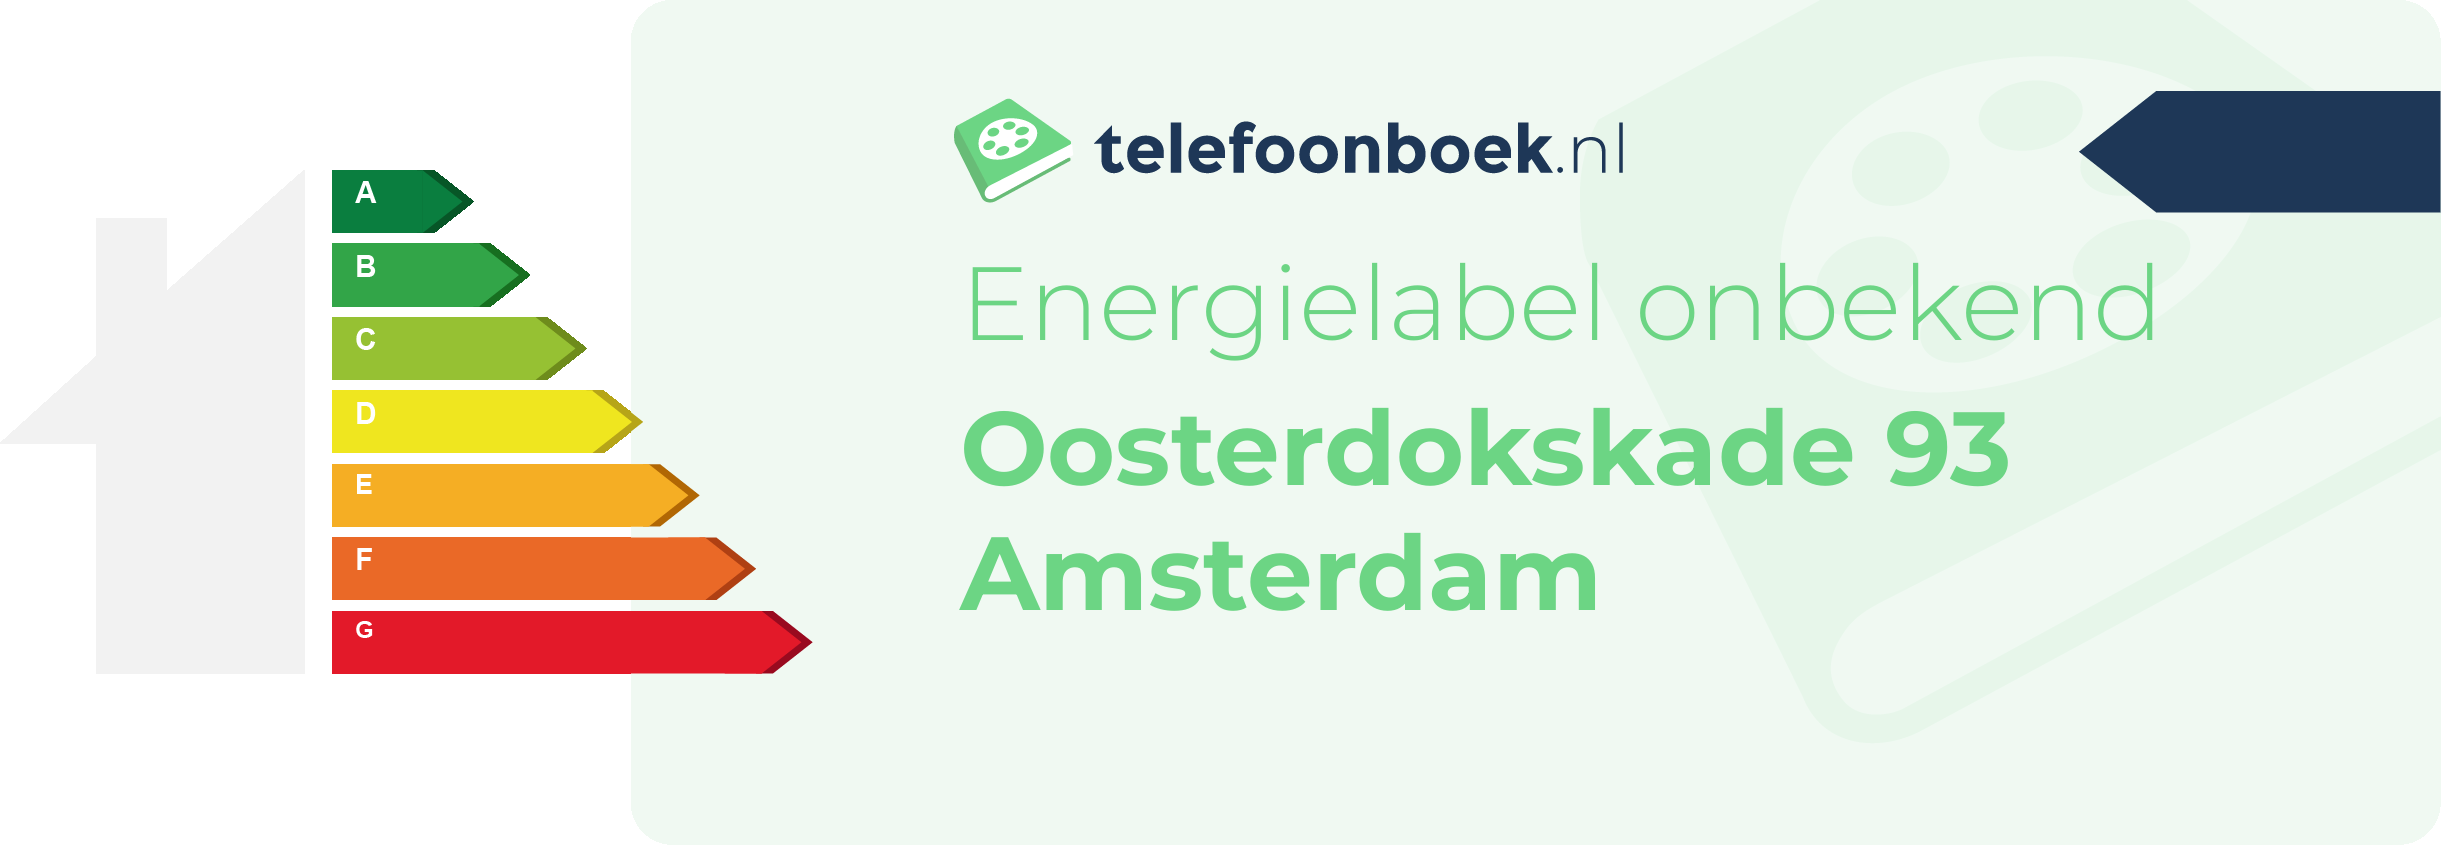 Energielabel Oosterdokskade 93 Amsterdam